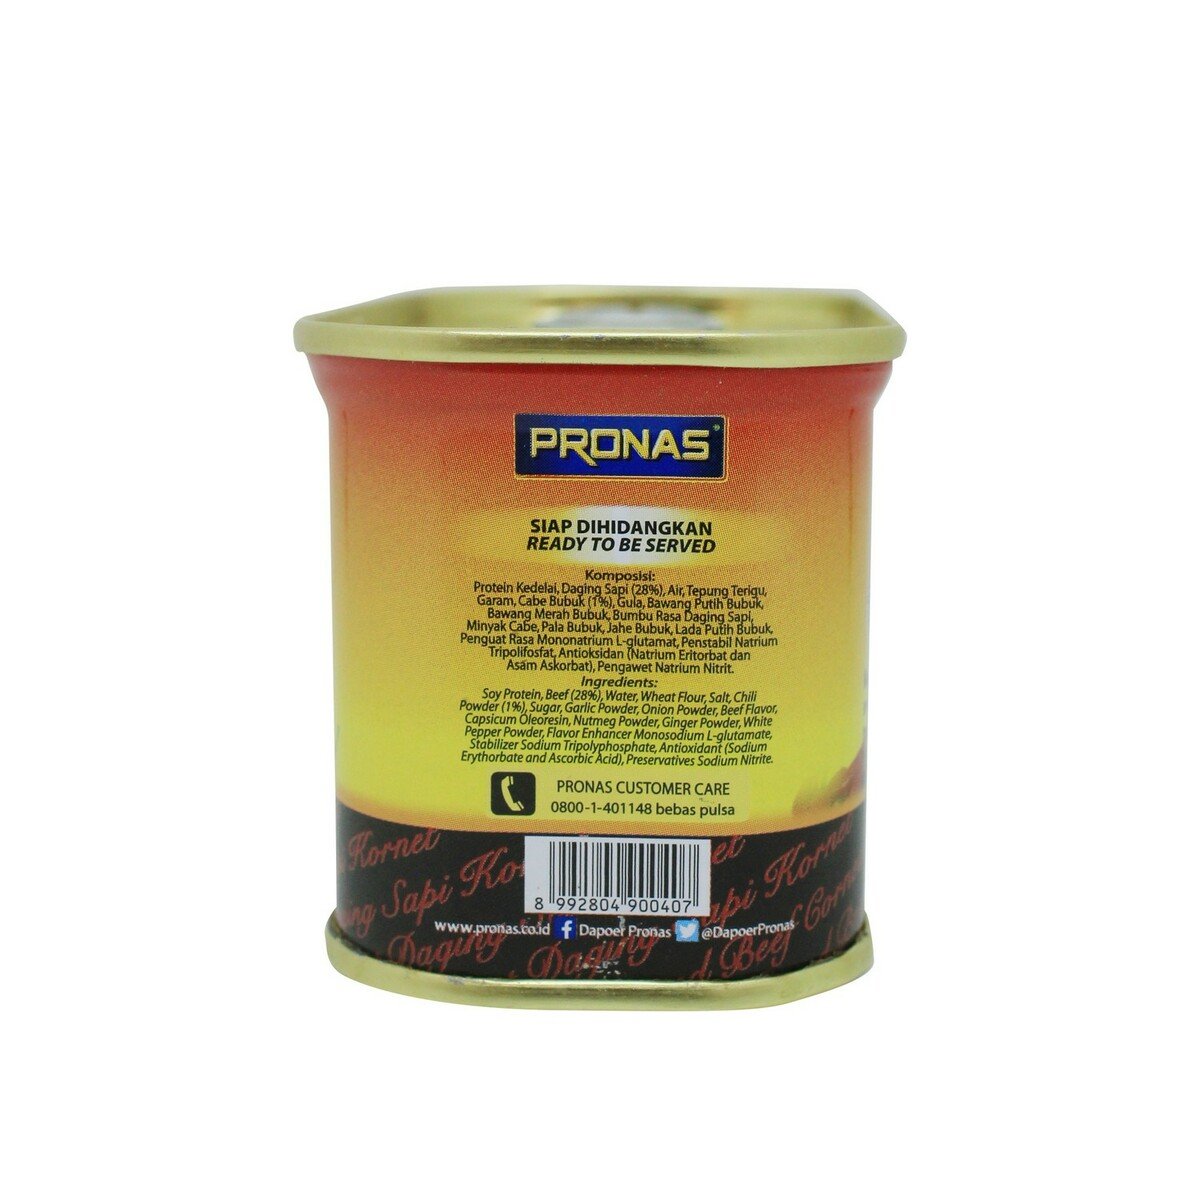 Pronas Corned Beef Chili 198g